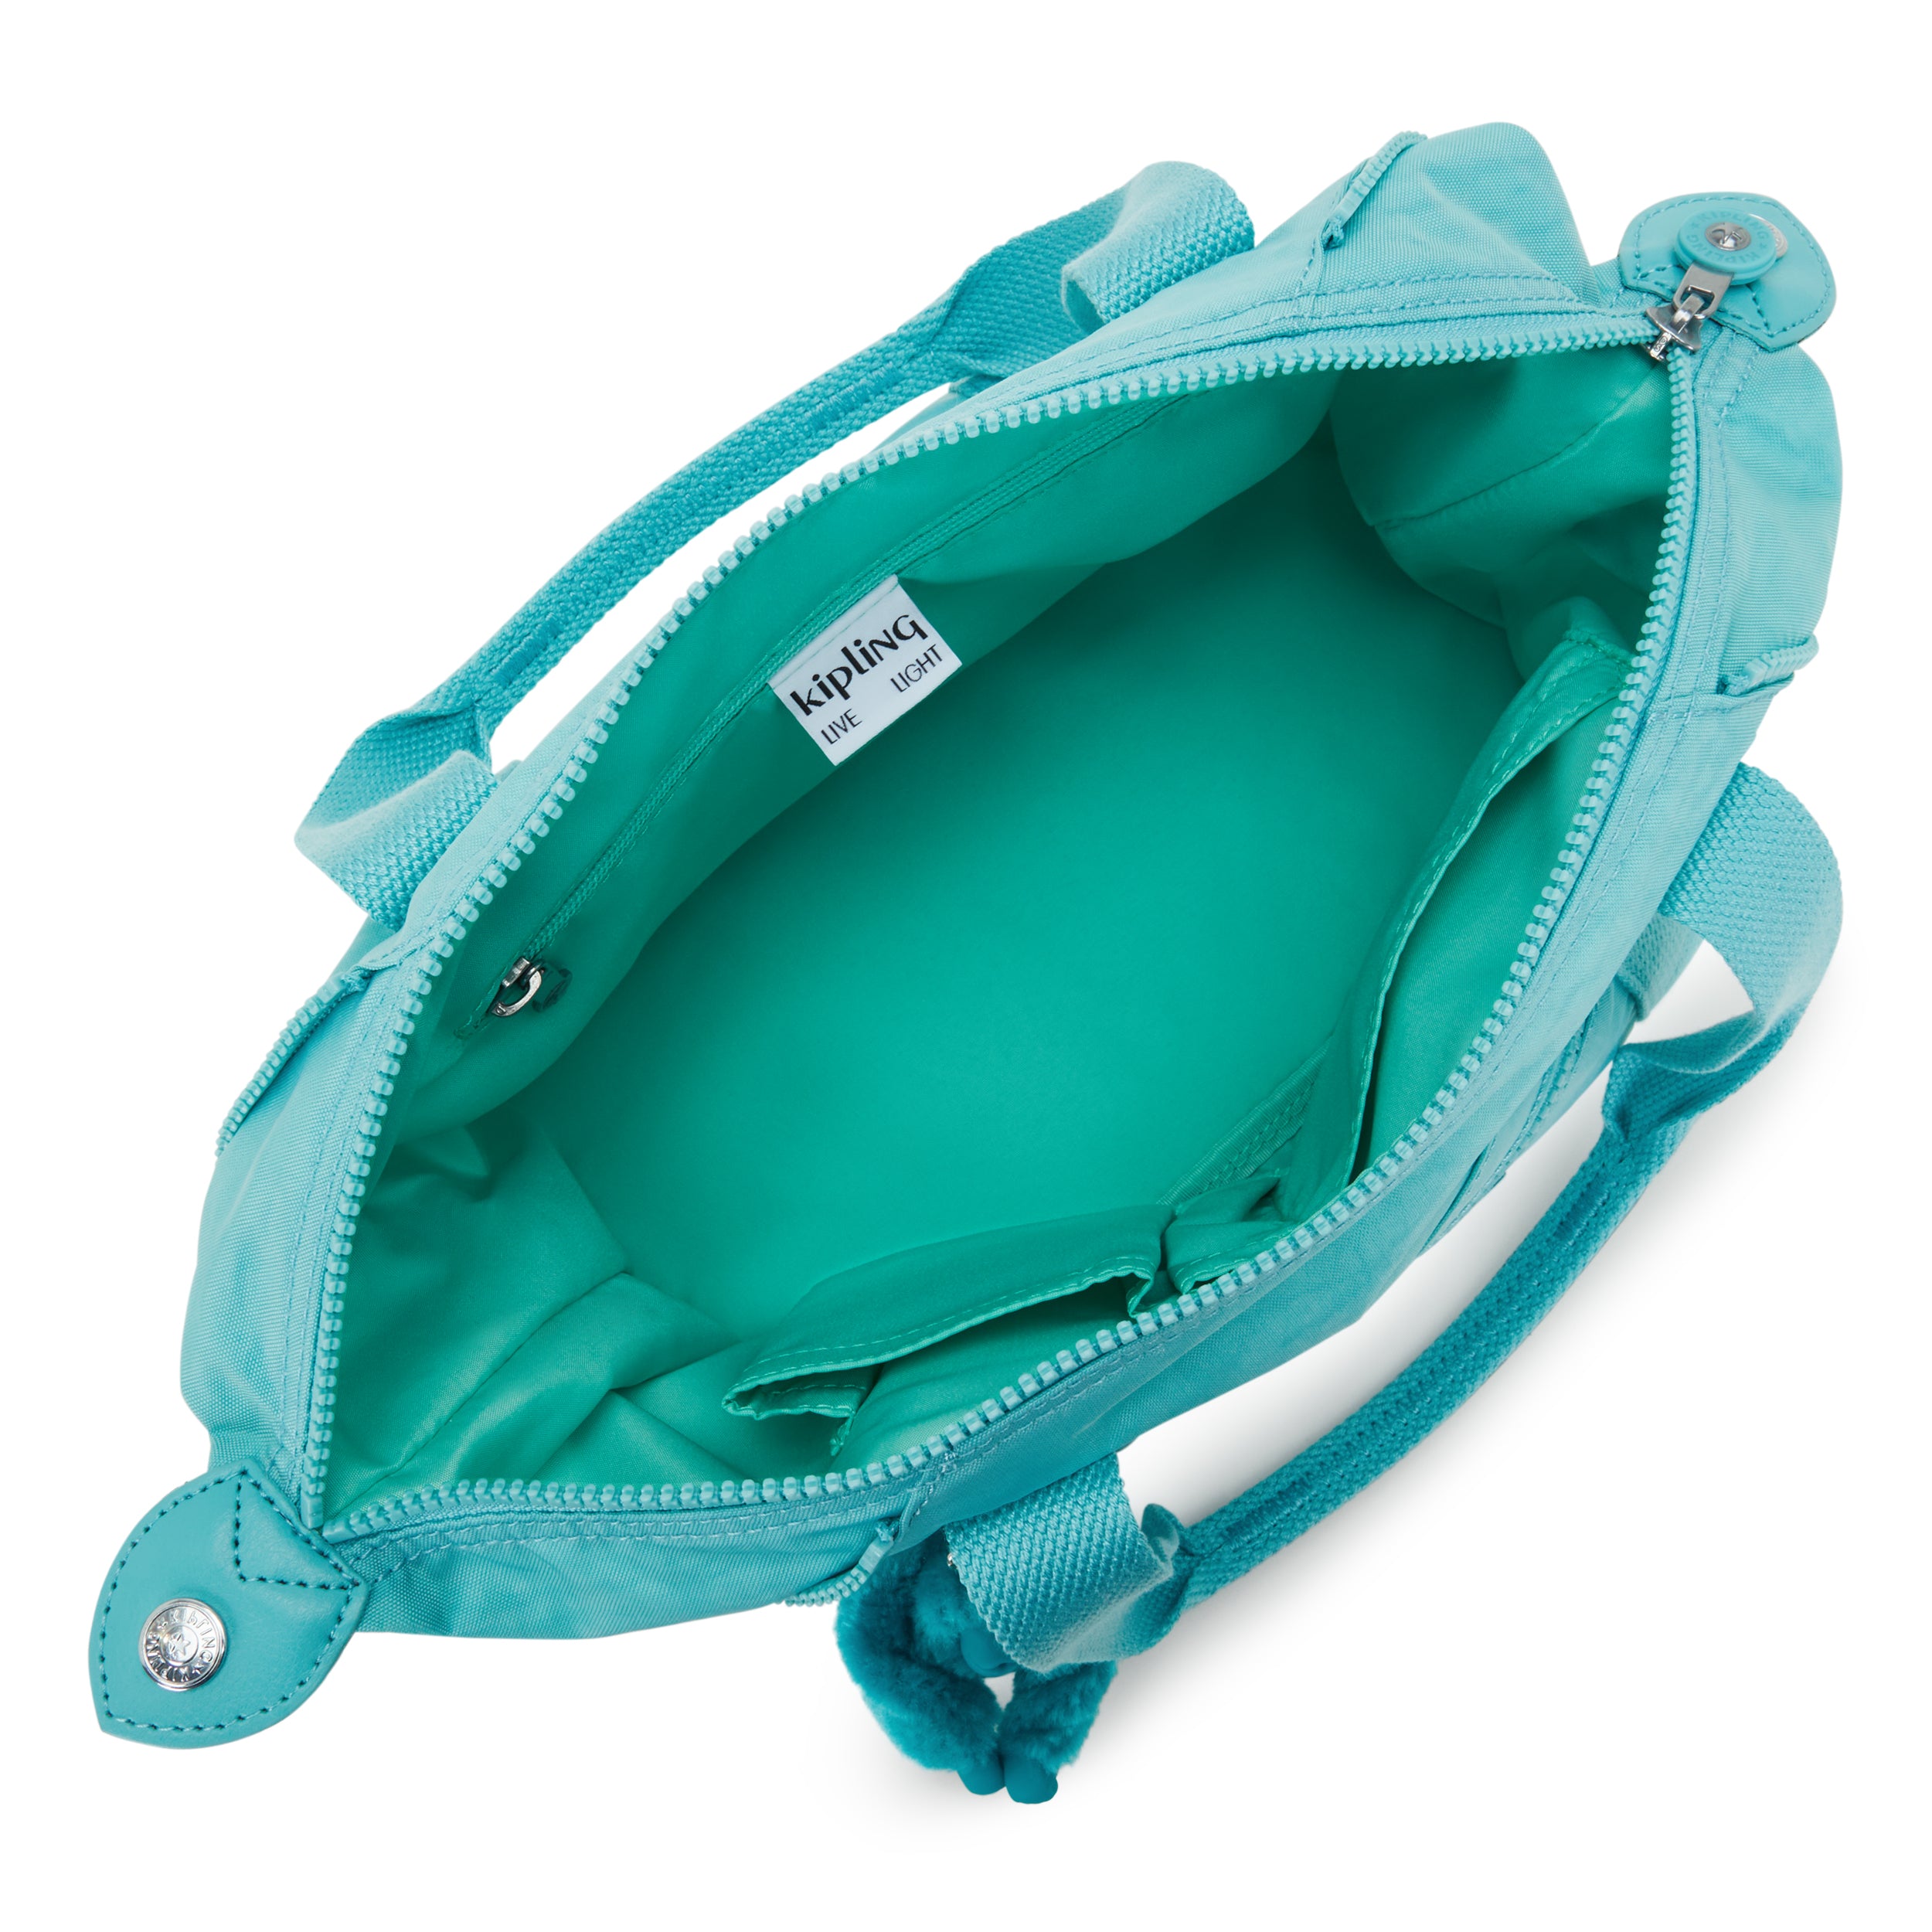 KIPLING-Art Mini-Small handbag (with removable shoulderstrap)-Deepest Aqua-01327-T6E